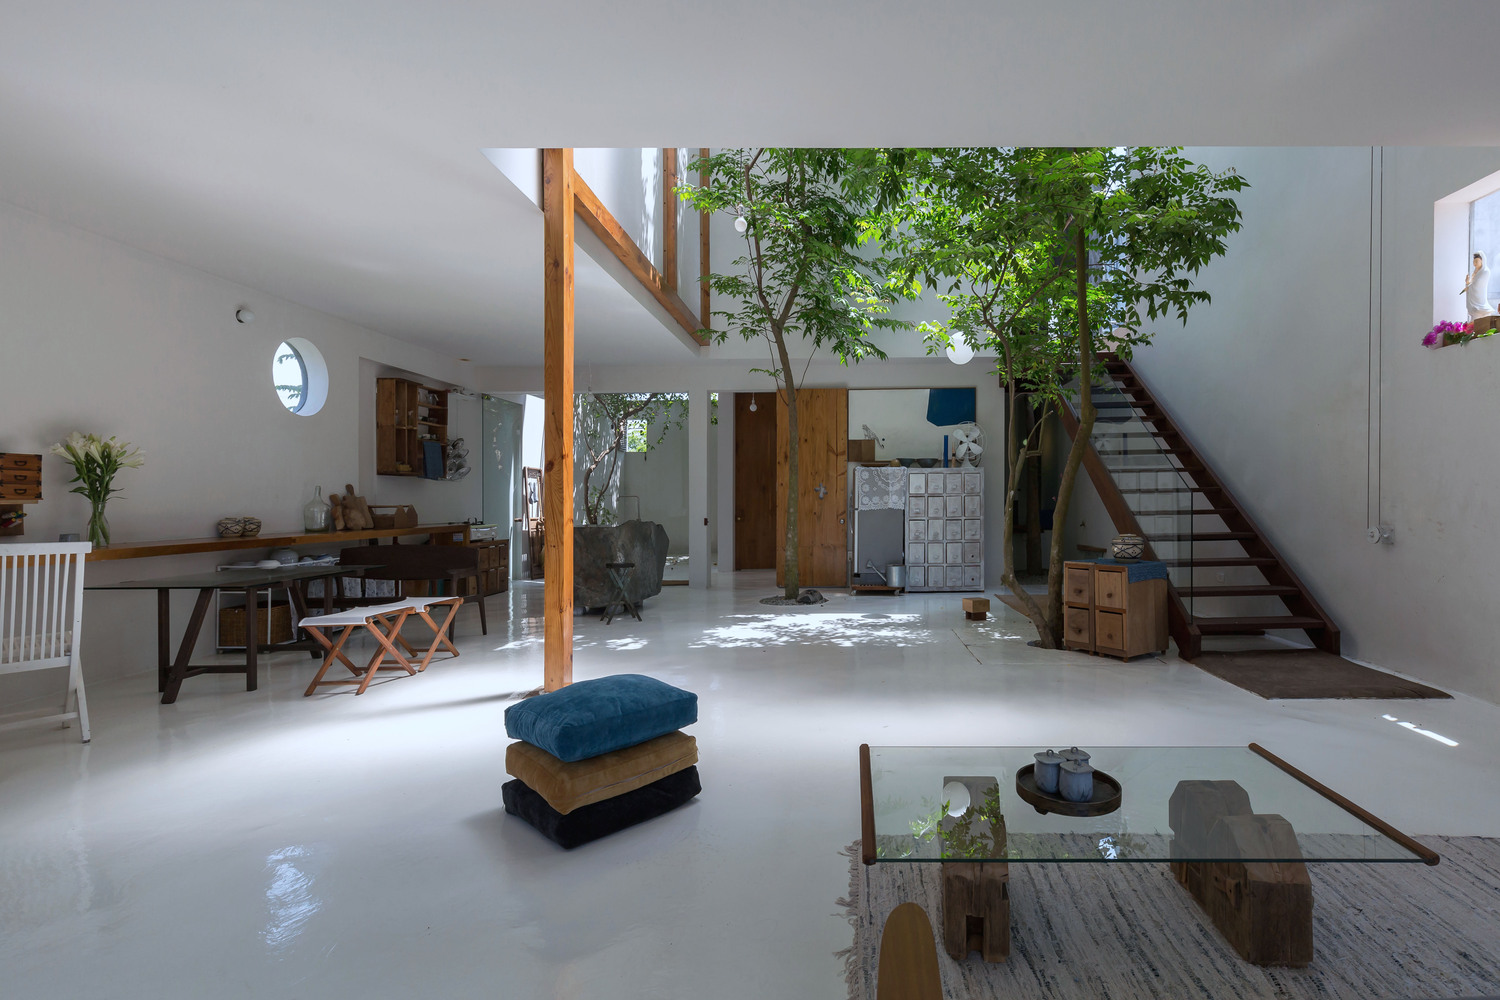 hình ảnh toàn cảnh không gian sinh hoạt chung ở tầng trệt ngôi nhà với cây xanh lớn trồng ở khoảng trống thông tầng